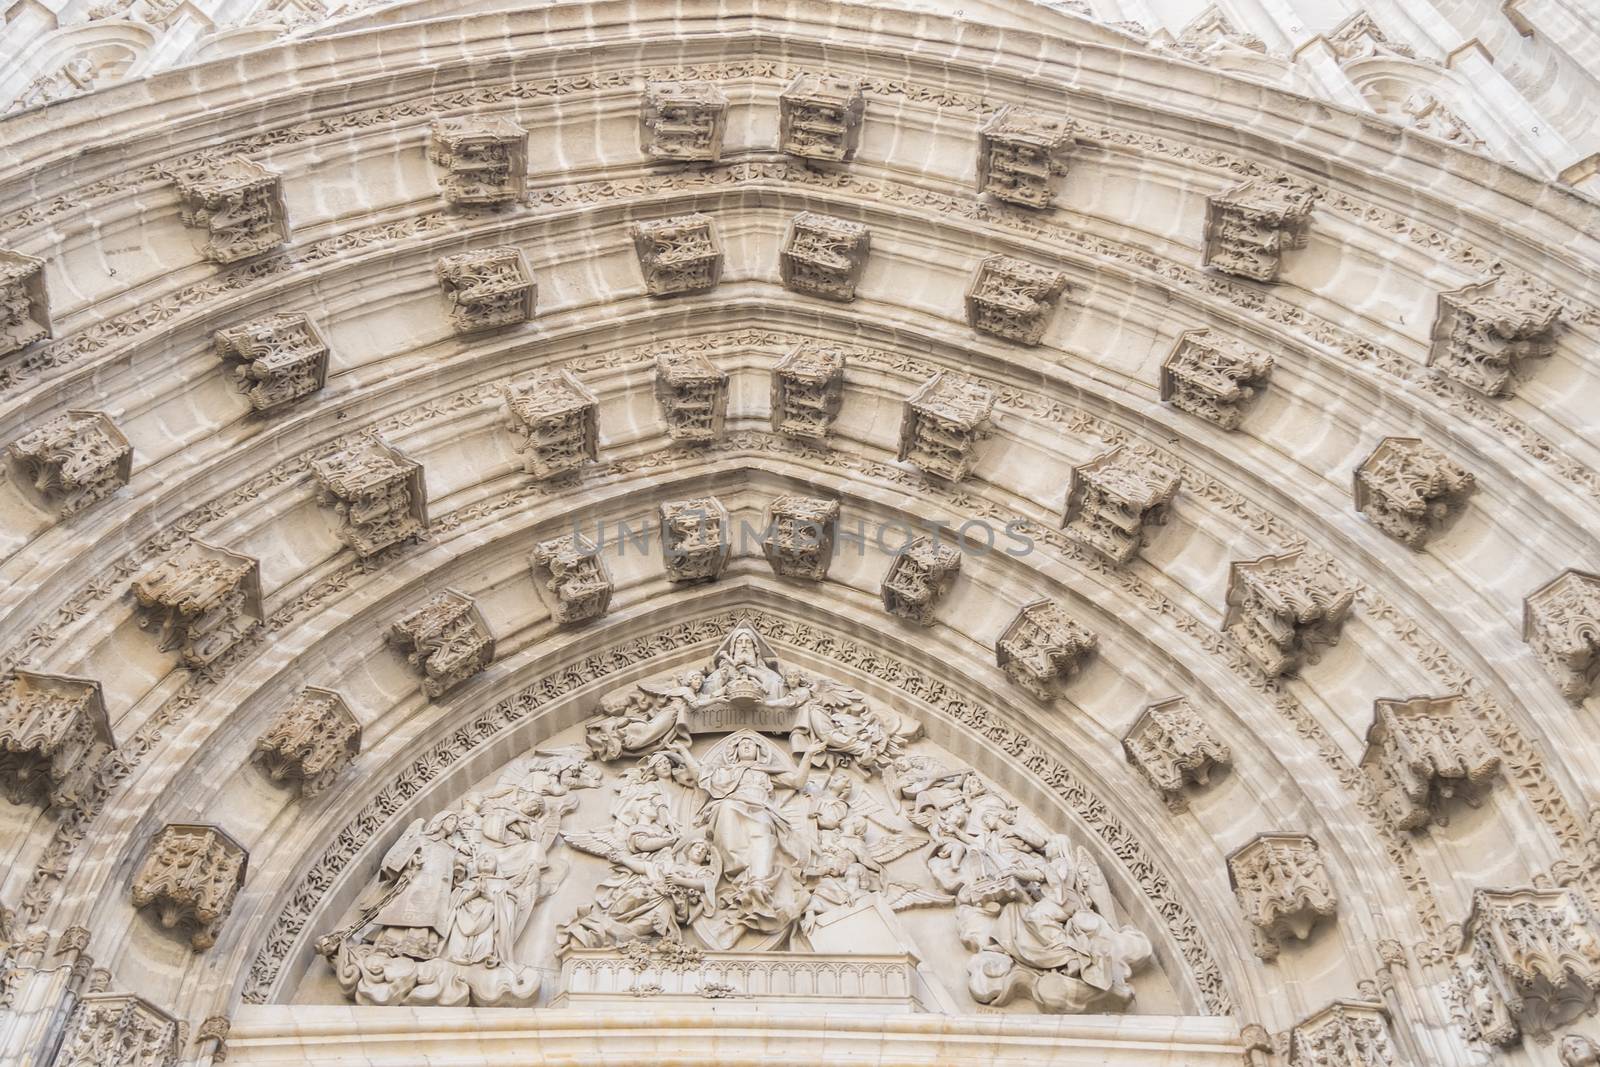 Door of Assumption (Spanish: Puerta de la Asuncion) of the Sevilla Cathedral (Spanish: Catedral de Santa Maria de la Sede) in Spain, main portal of the west facade.